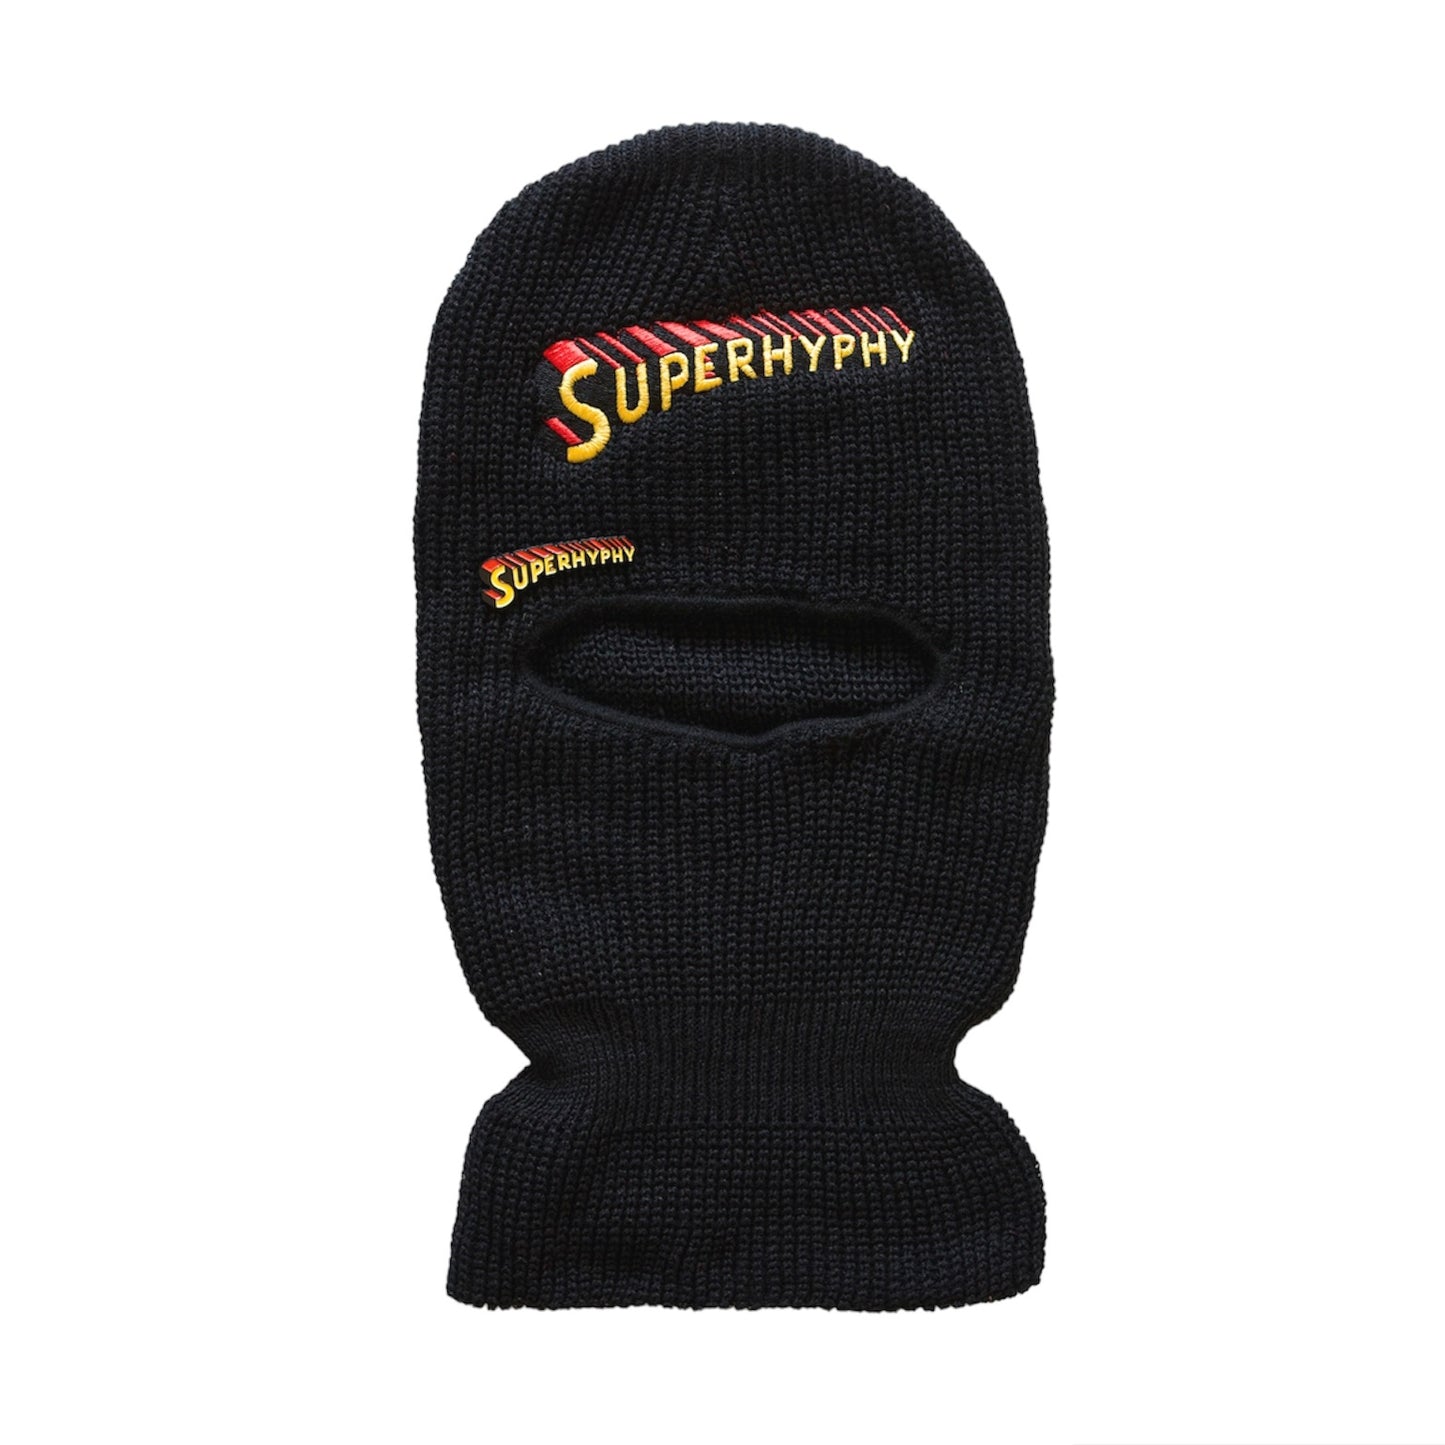 Black “Superhyphy” Ski-Mask